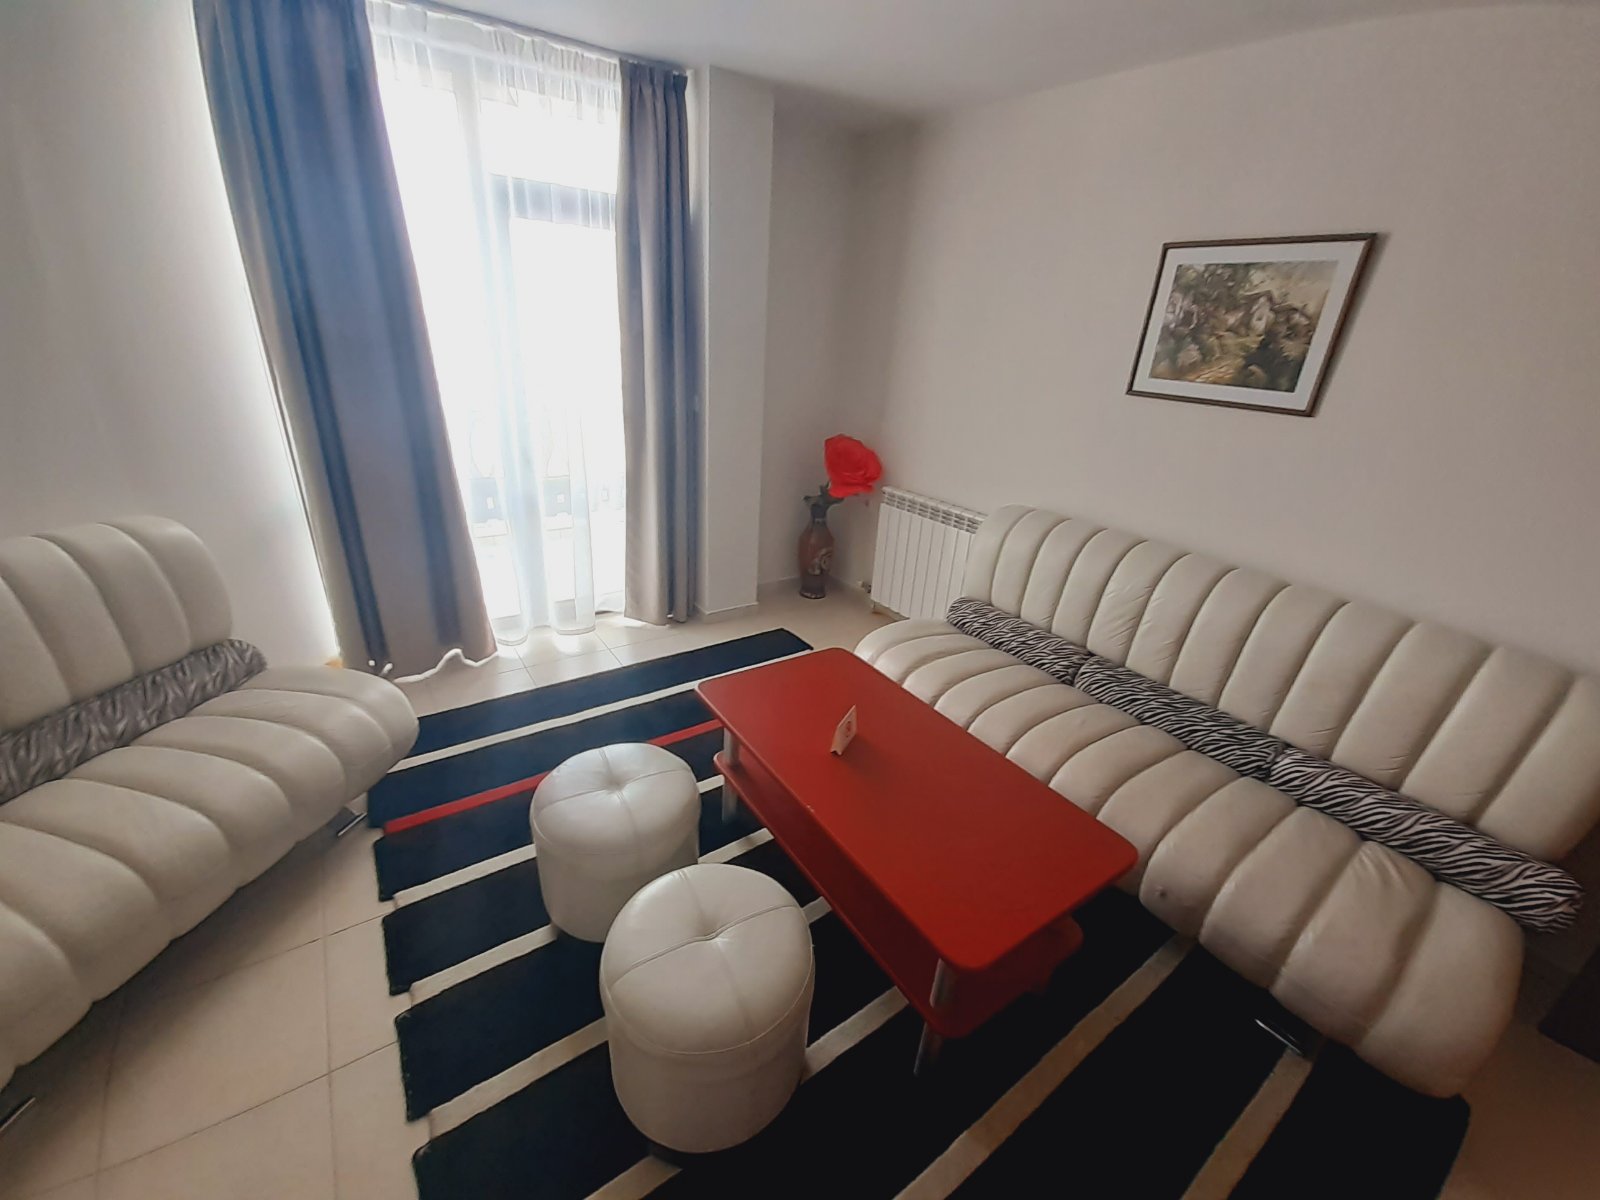 Банско: Тристаен апартамент в затворен комплекс Elegant LUX със Спа зона и басейн